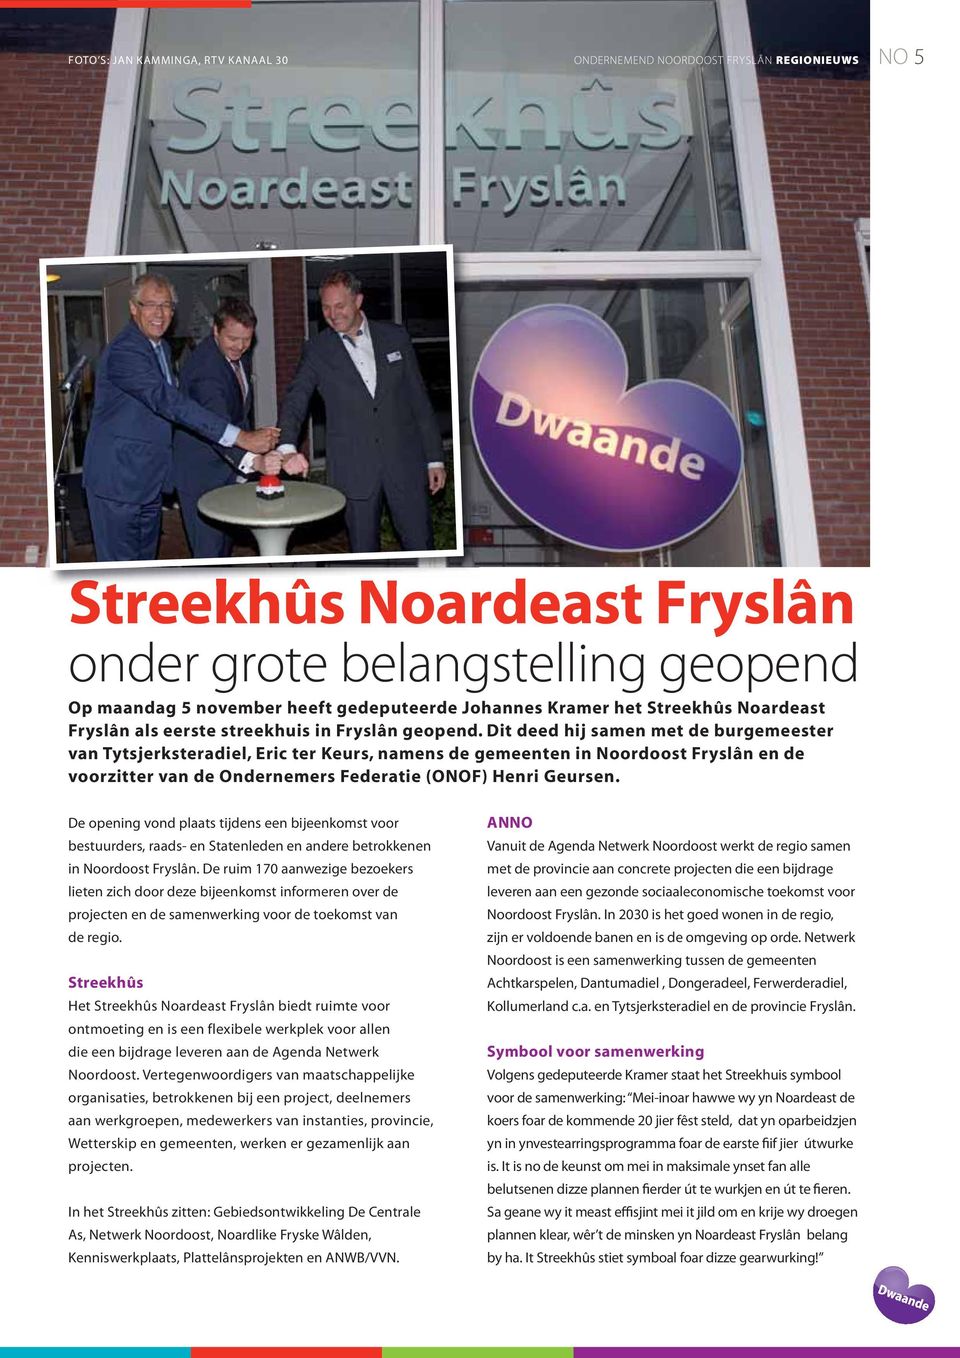 Dit deed hij samen met de burgemeester van Tytsjerksteradiel, Eric ter Keurs, namens de gemeenten in Noordoost Fryslân en de voorzitter van de Ondernemers Federatie (ONOF) Henri Geursen.